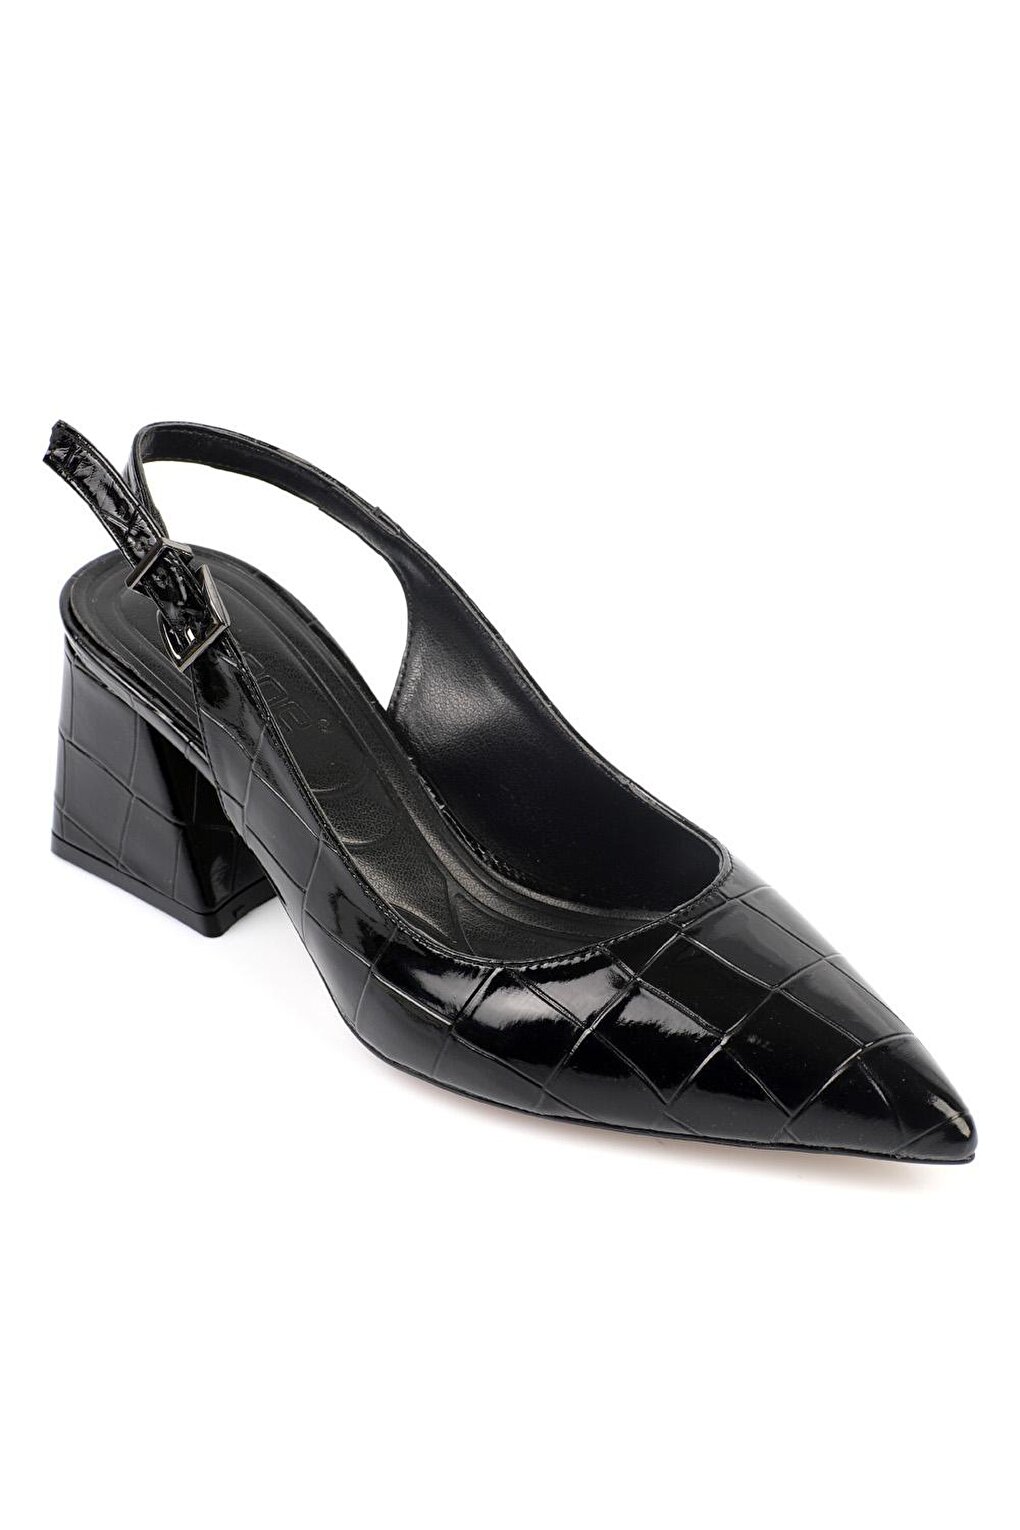 Женские туфли на высоком каблуке с мягкой мягкой подошвой Capone Outfitters женские вечерние сапоги dkzsyim женские сексуальные туфли на высоком каблуке шпильке танцевальные туфли черного цвета с мягкой подошвой для